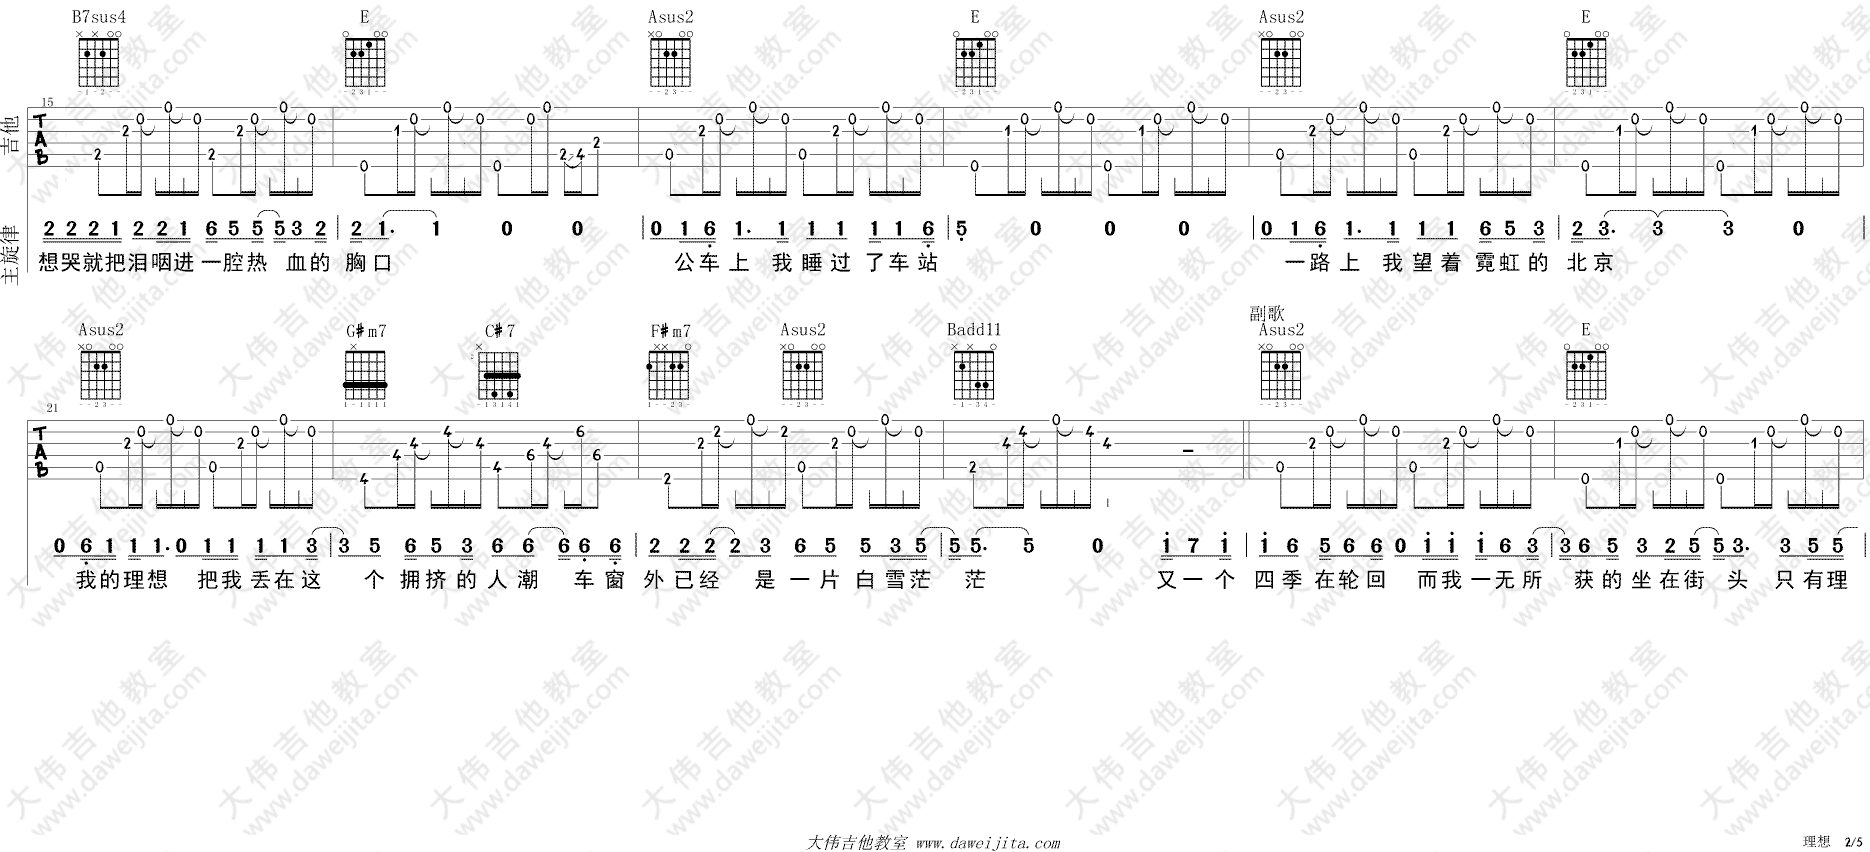 赵雷《理想》吉他谱(E调)-Guitar Music Score